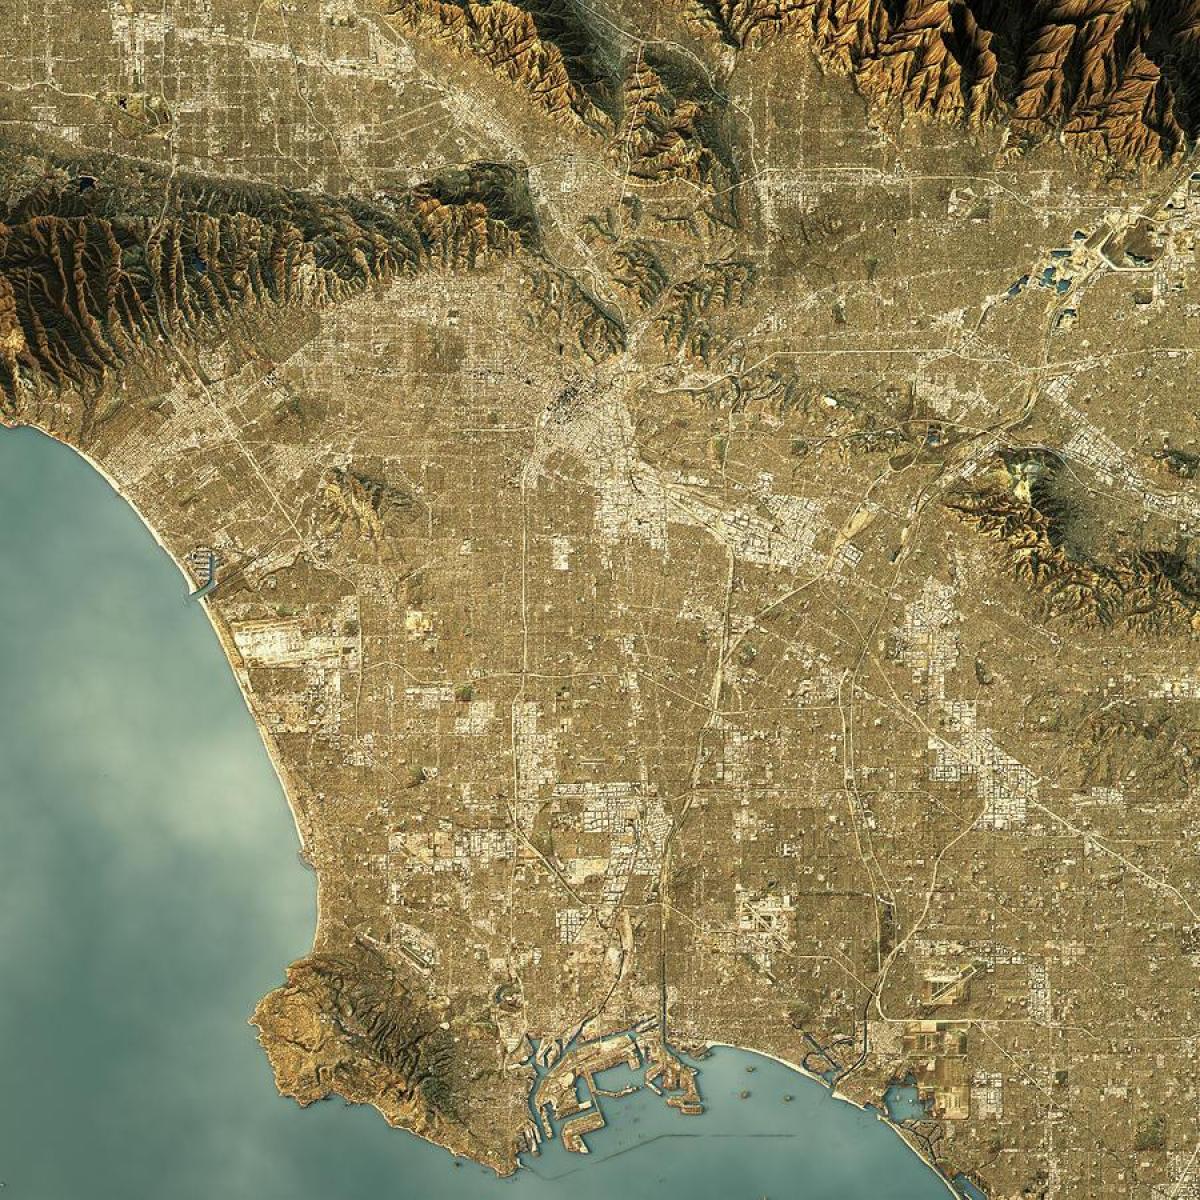 Höhenkarte von Los Angeles